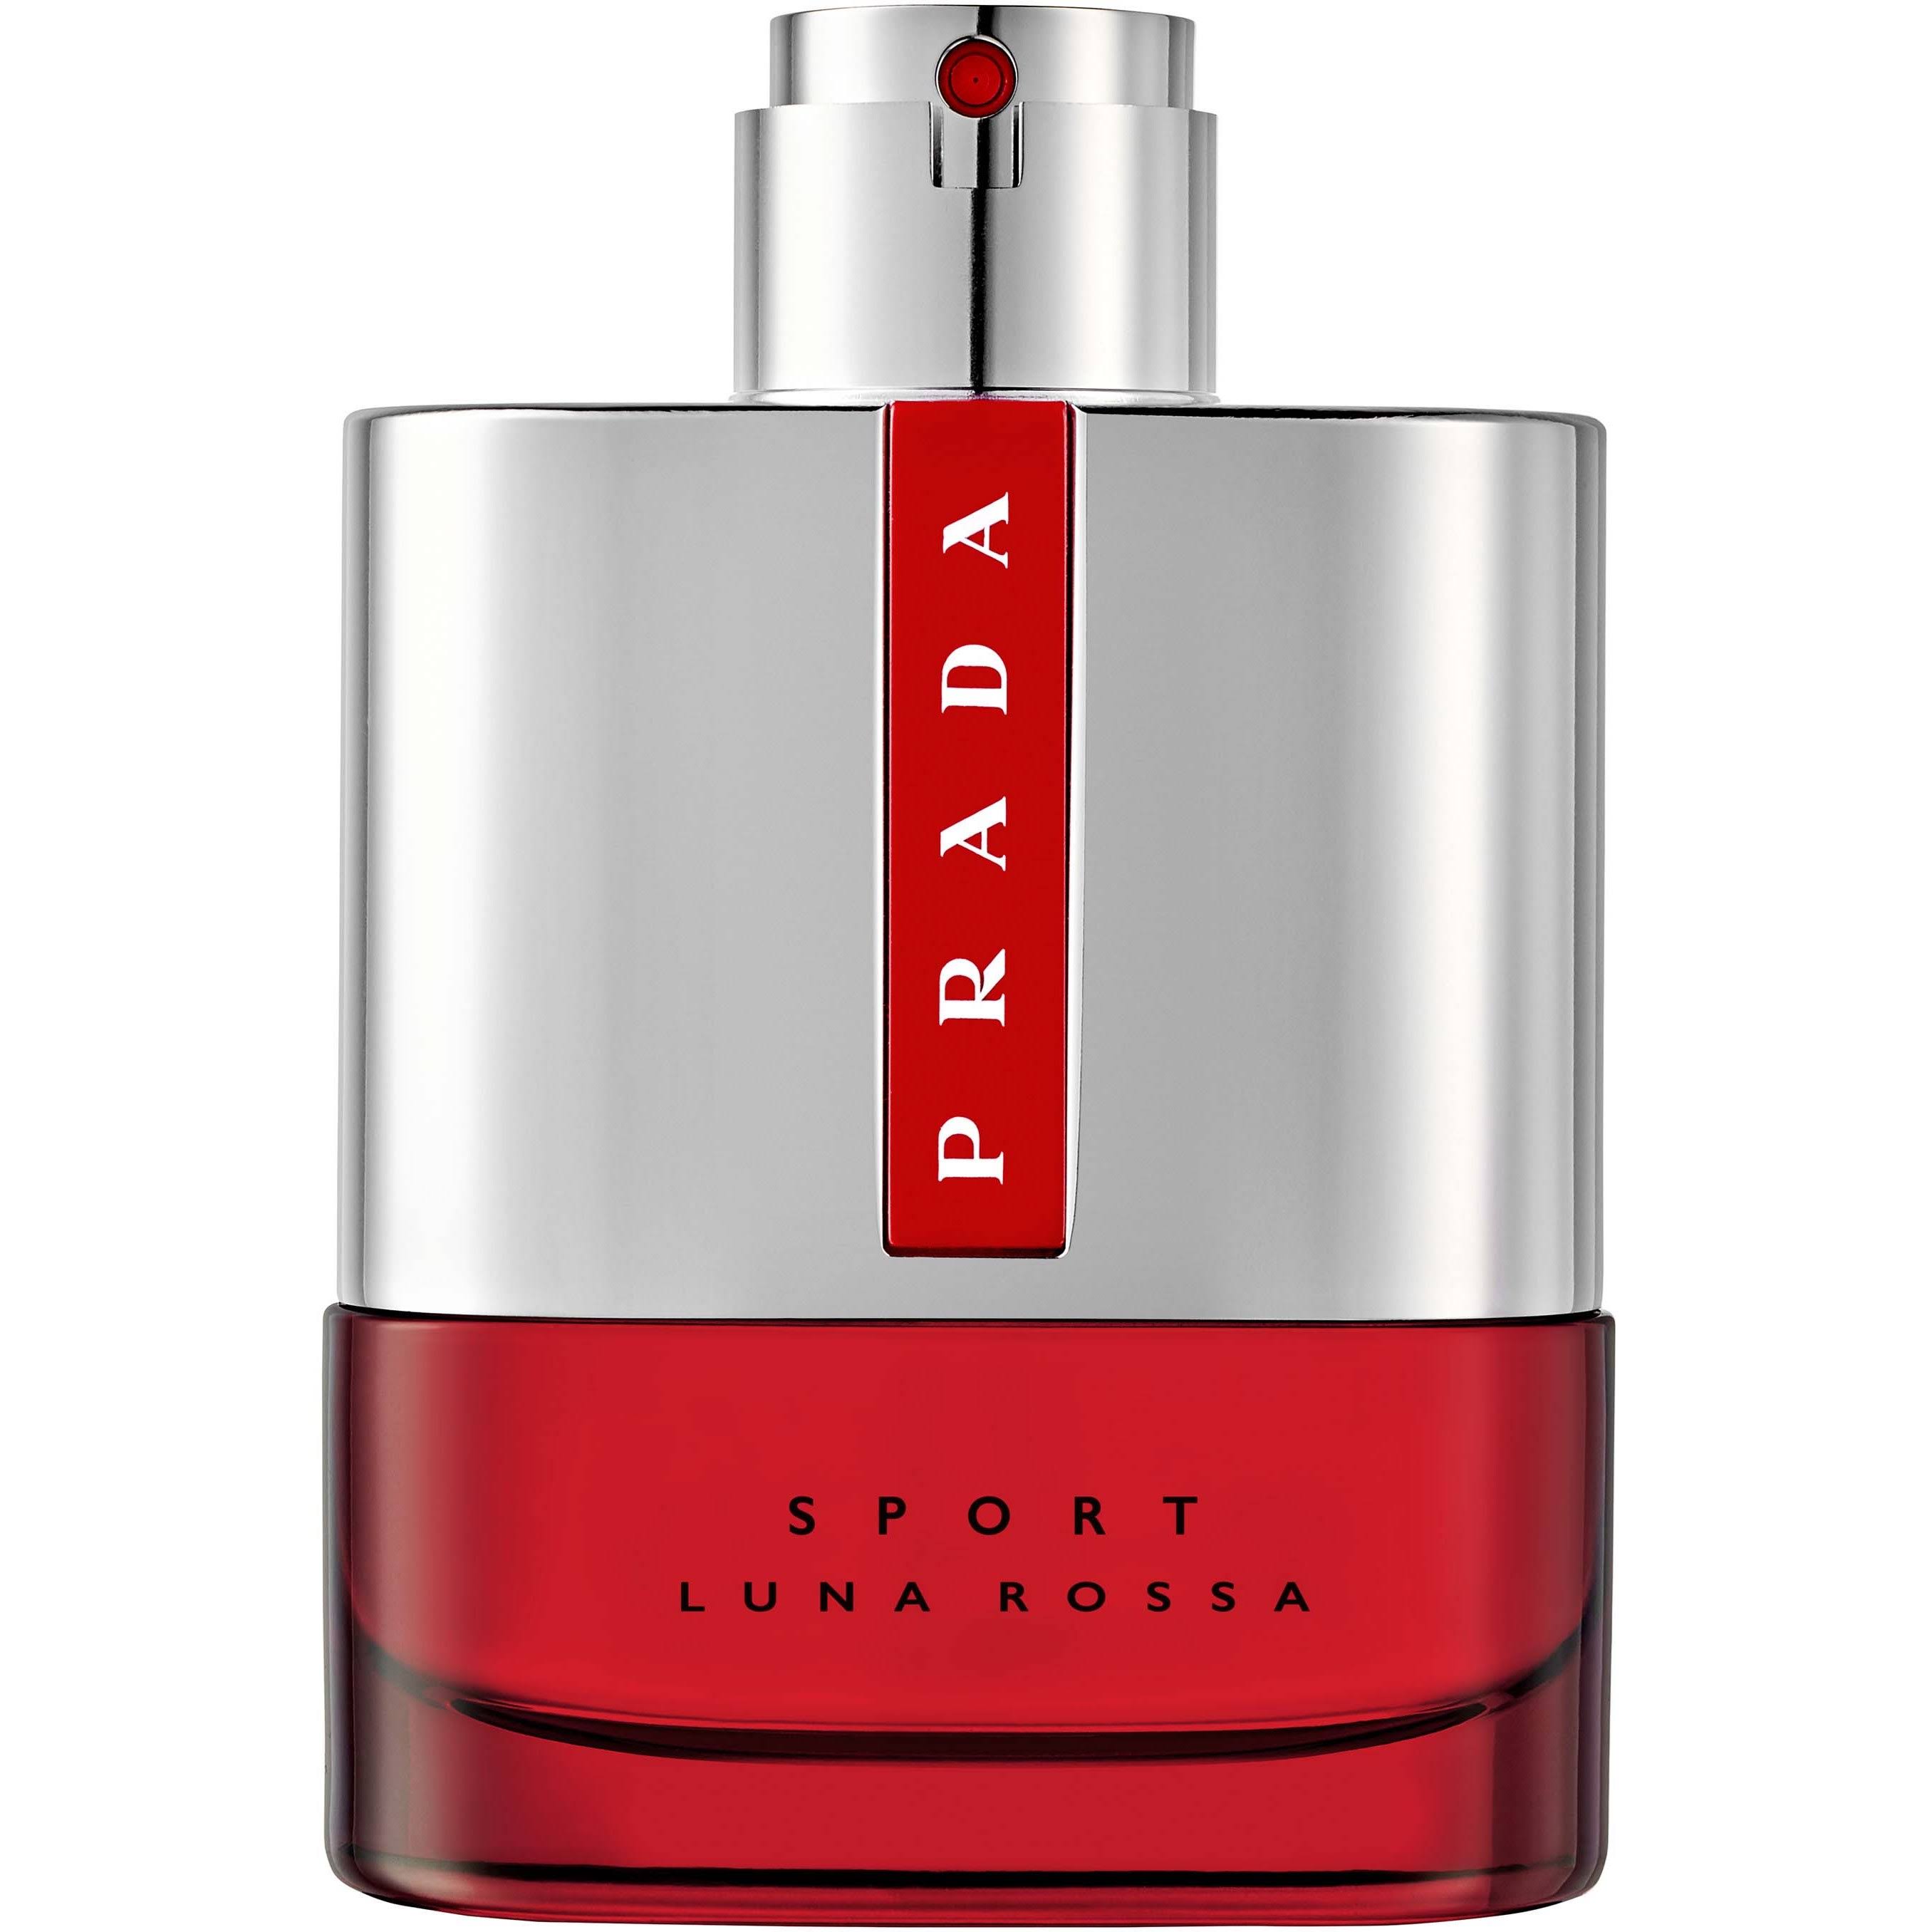 Prada Luna Rossa Sport By Prada For Men 3.4 oz Eau de Toilette Spray